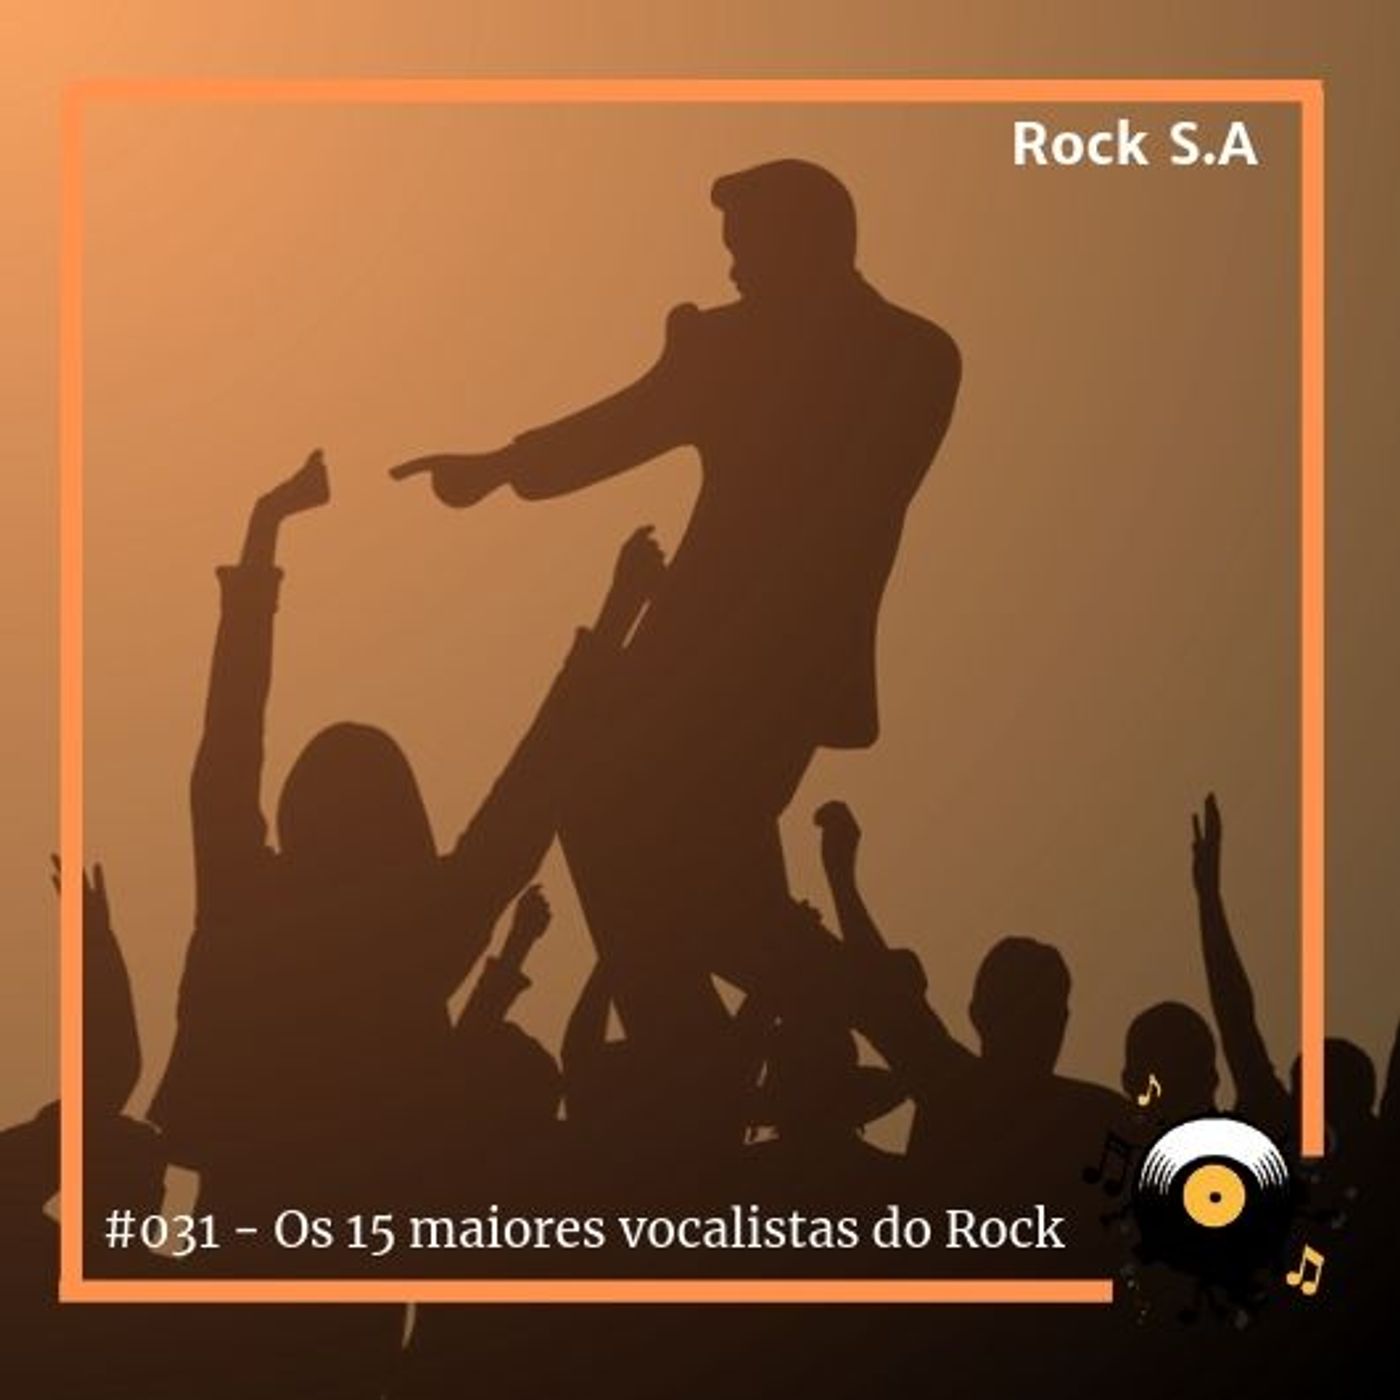 #031 - Rock S.A - Os 15 maiores vocalistas da história do Rock